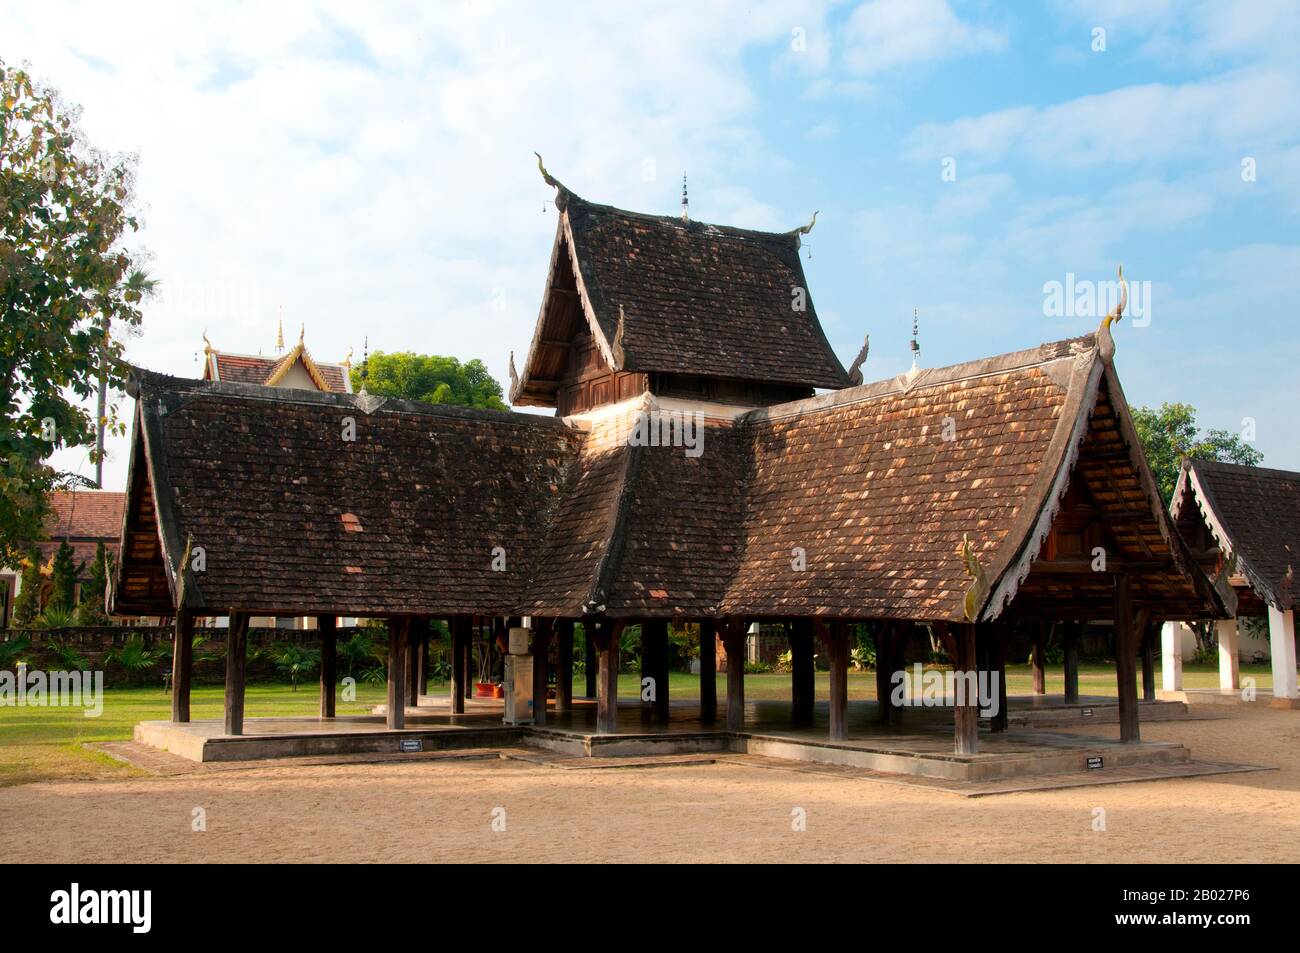 Wat Ton Kwen (วัด ต้น เกว๋น), eher bekannt als Wat Inthrawat (วัด อินทราวาส), bedeutet "Tempel der Zuckerpalmen" in kham muang oder Nordthailand und sicher genug, dass der rustikale Tempel, der in einem kleinen Dorf inmitten von grünen Reisfeldern liegt, von hohen und eleganten Zuckerpalmen umgeben ist. Wat Ton Kwen, erbaut zu Beginn der Herrschaft von Chao Kawilorot (1856-70) im Jahr 1856, gehört zu den besten und reinsten Beispielen, die die traditionelle Holzarchitektur Des LAN Na im 19. Jahrhundert überdauern. Zweifellos ist sie wegen ihrer geringen Größe und ihrer relativen Isolation von den "Verbesserungen" und anderen Entrüsten verschont geblieben Stockfoto